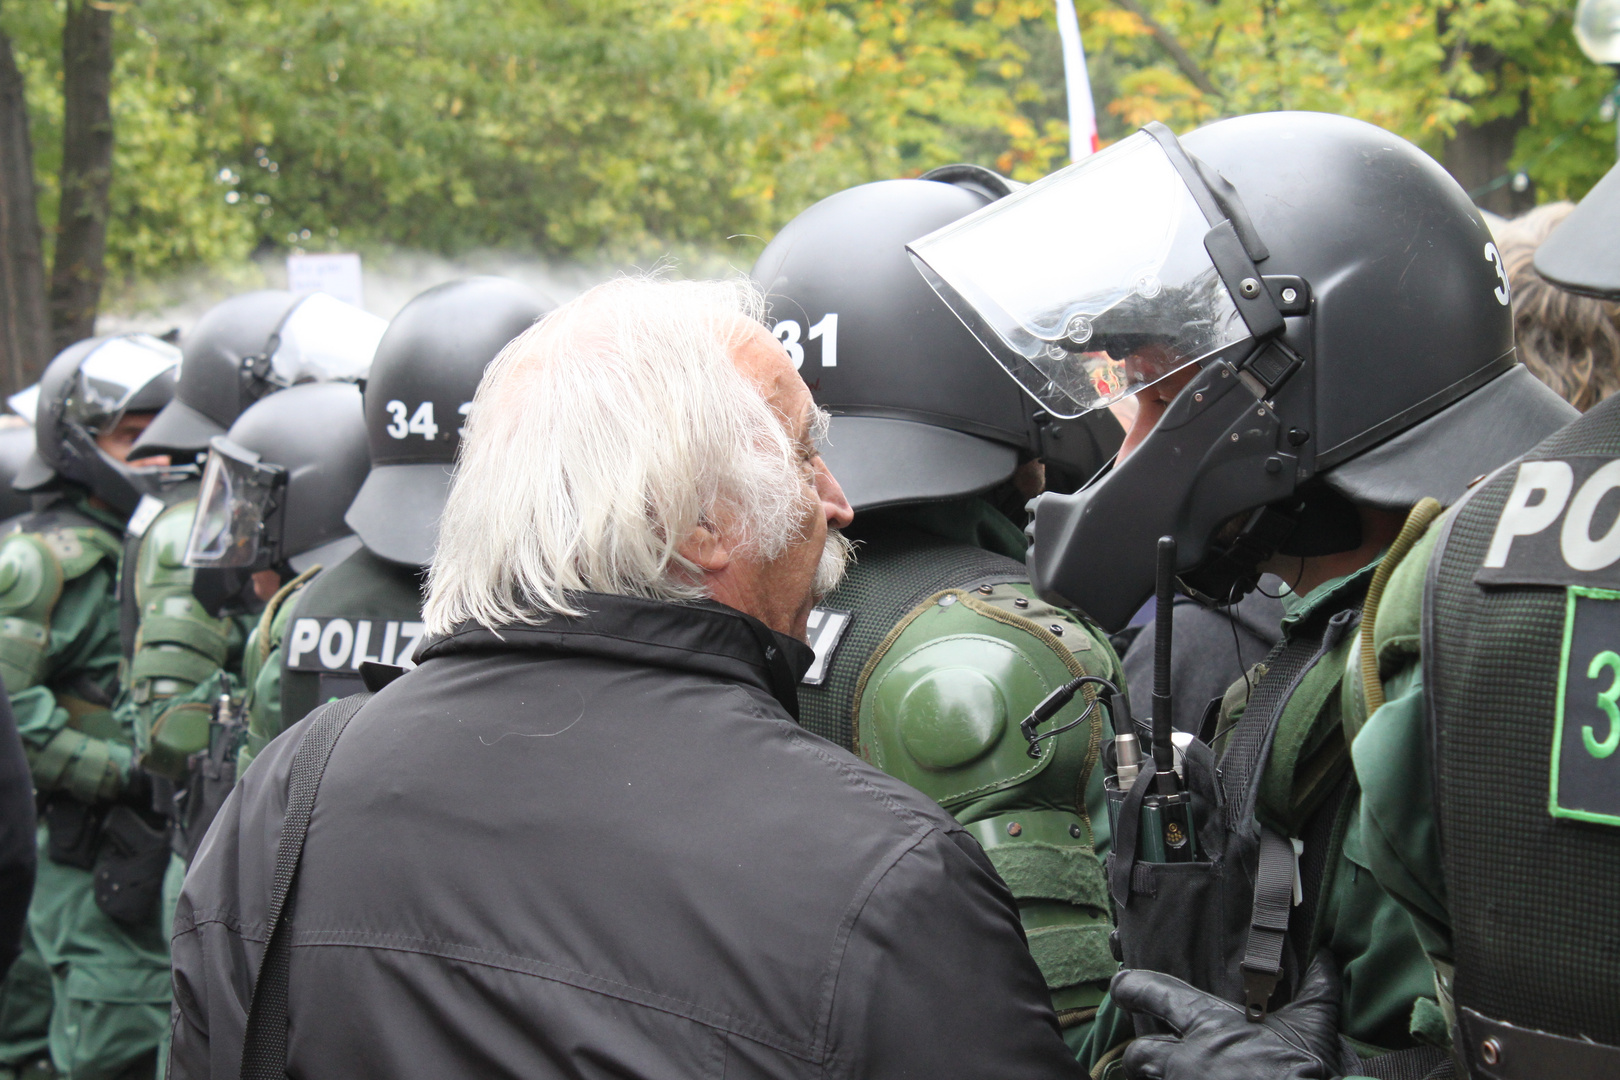 Mann spricht Polizist an - Stuttgart ParkRäumung 30.9